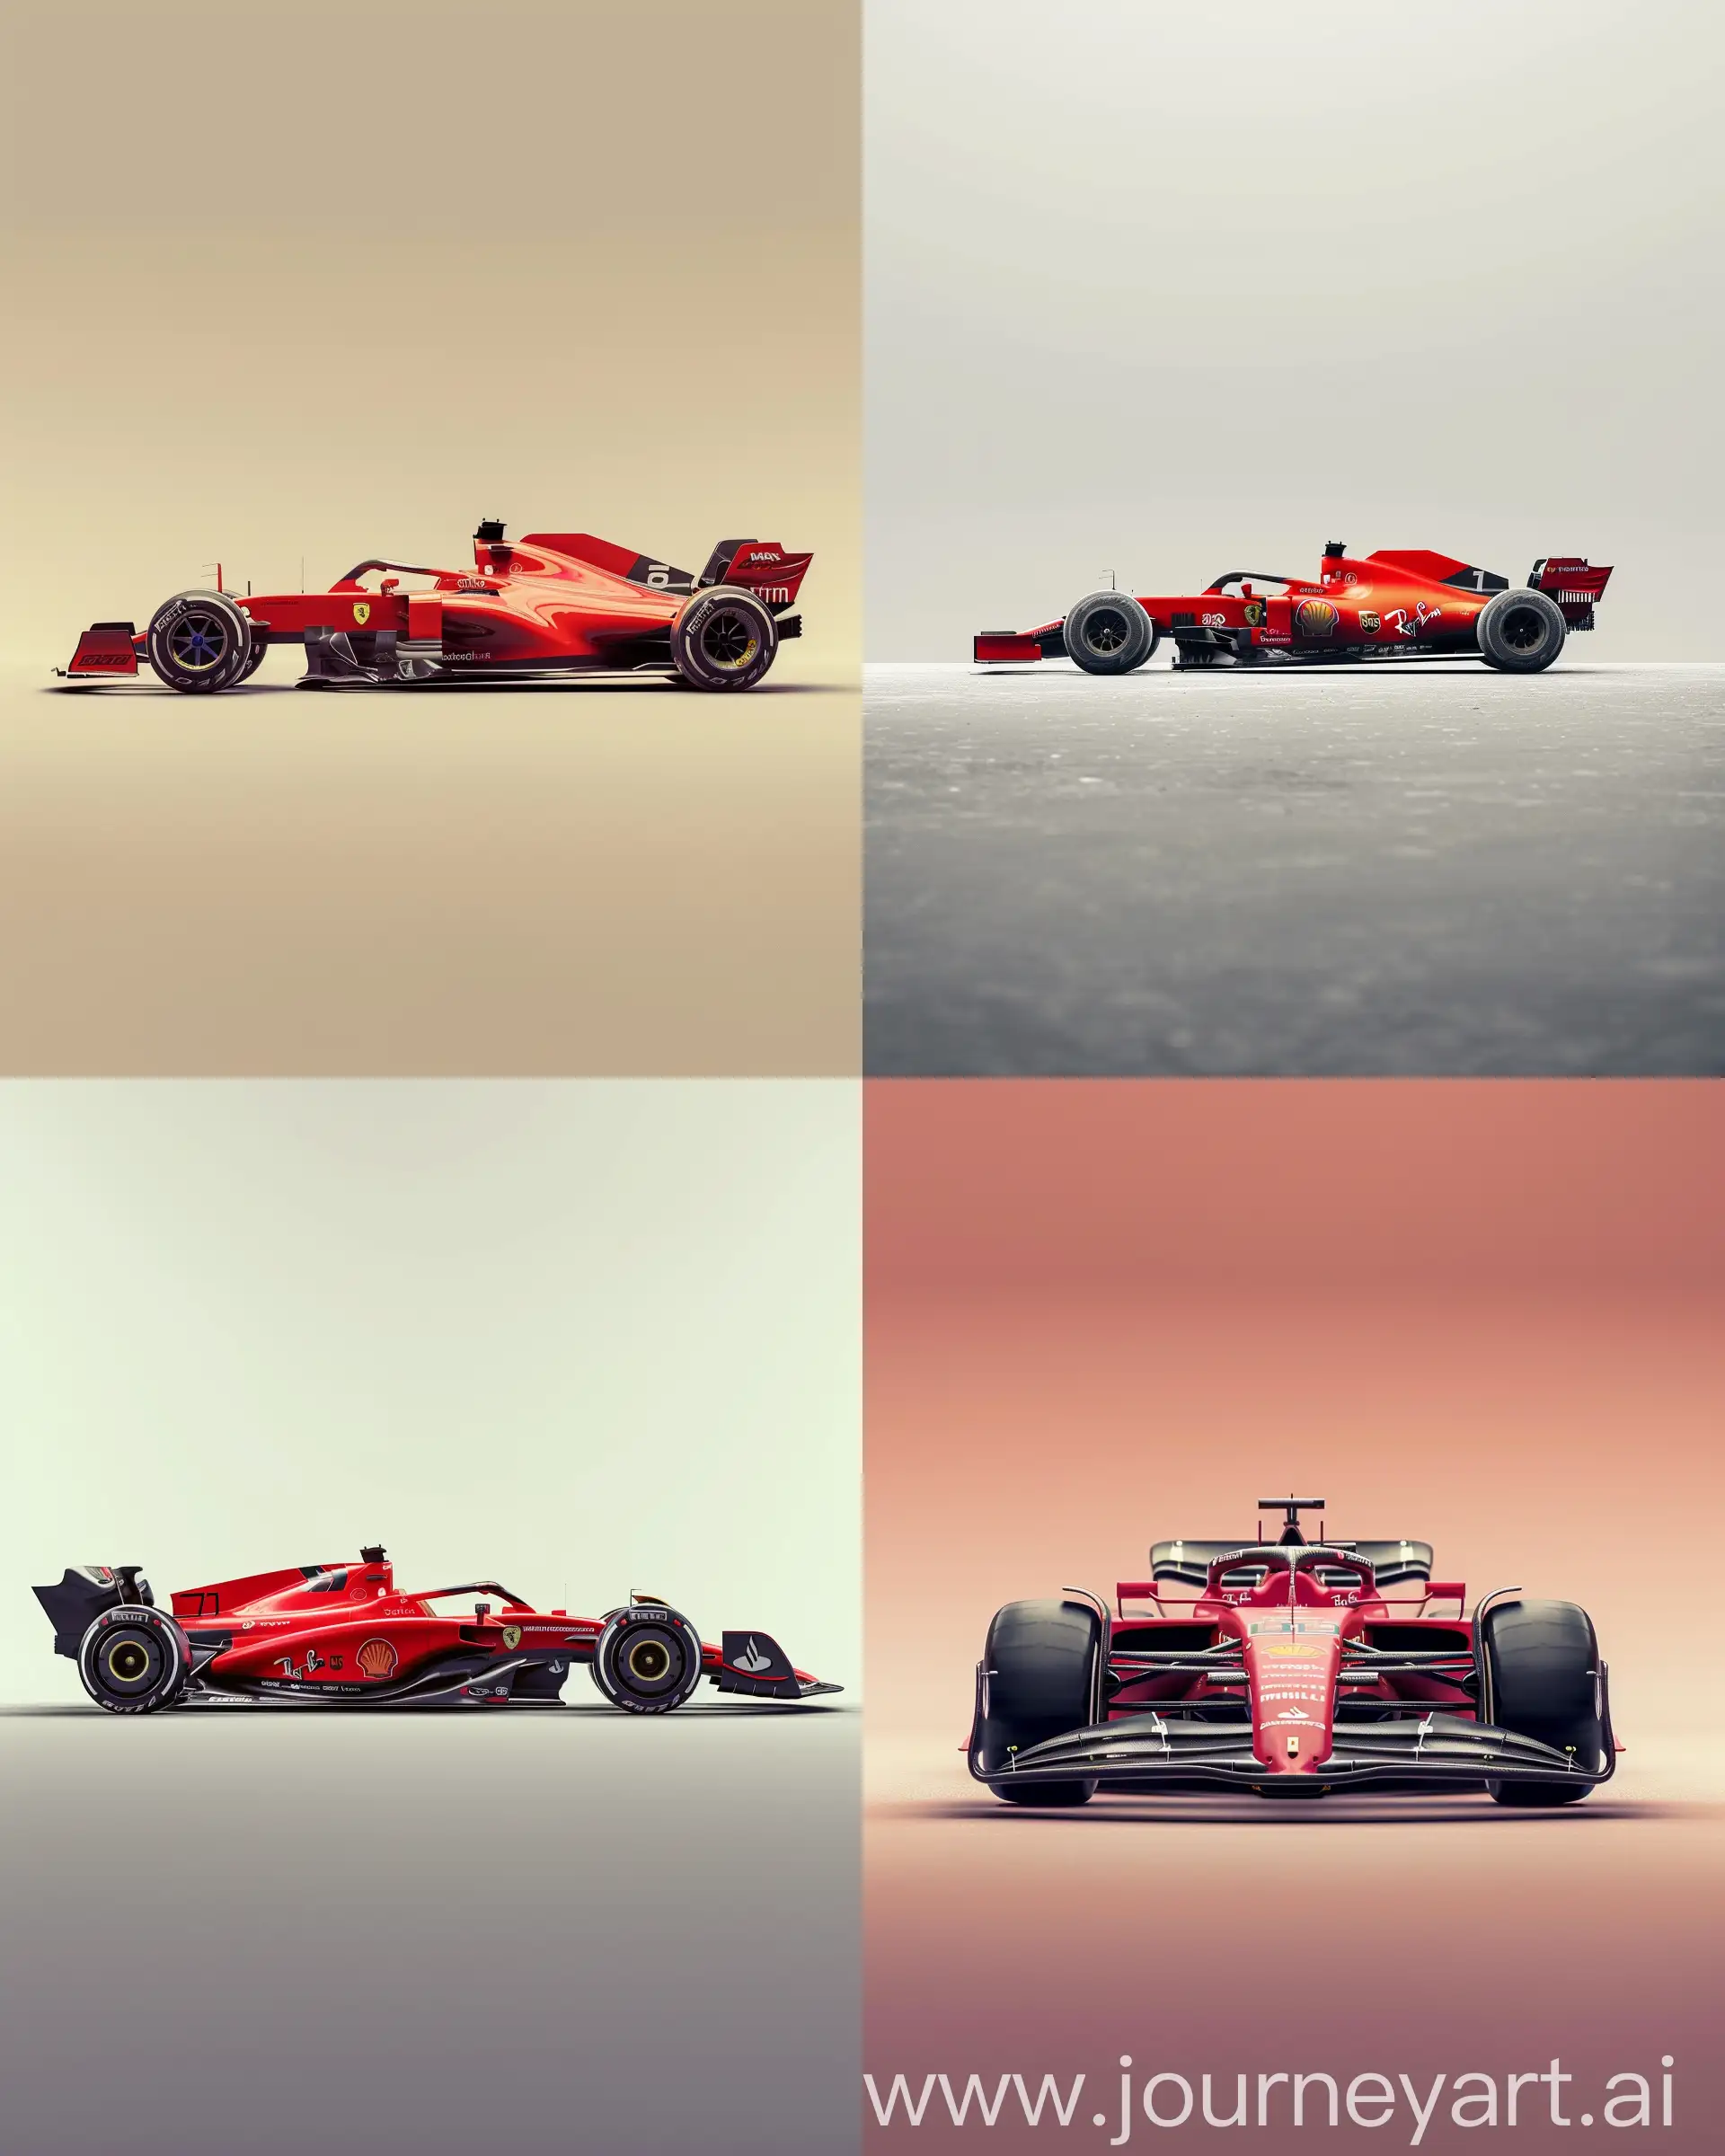 Dynamic-Red-Formula-1-Racing-Car-at-Extreme-Angle